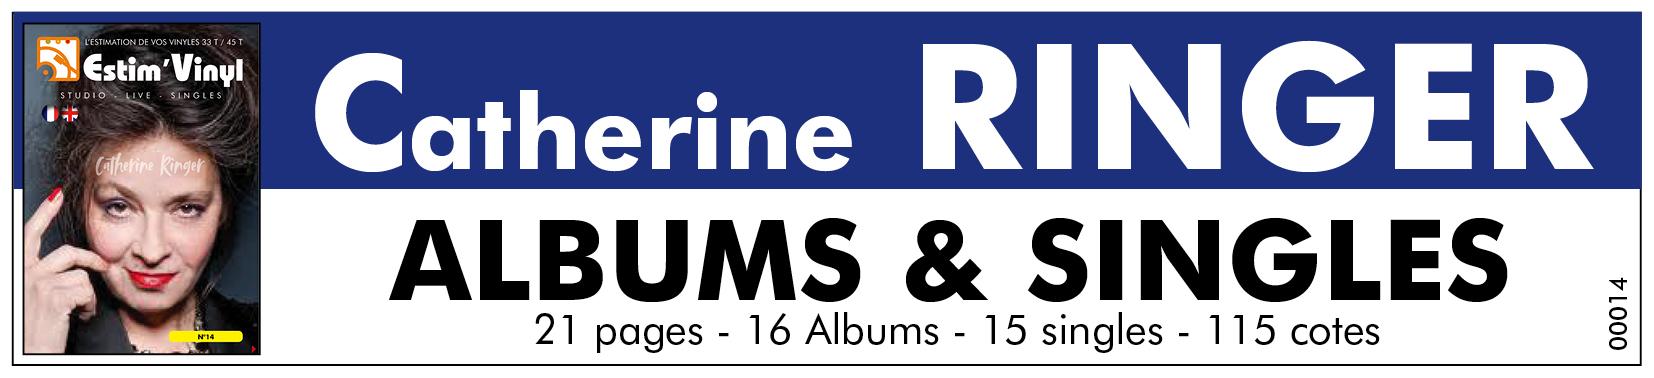 Retrouvez la cote des vinyles studio et live de Catherine Ringer, valeurs albums Catherine Ringer, www.estimvinyl.com